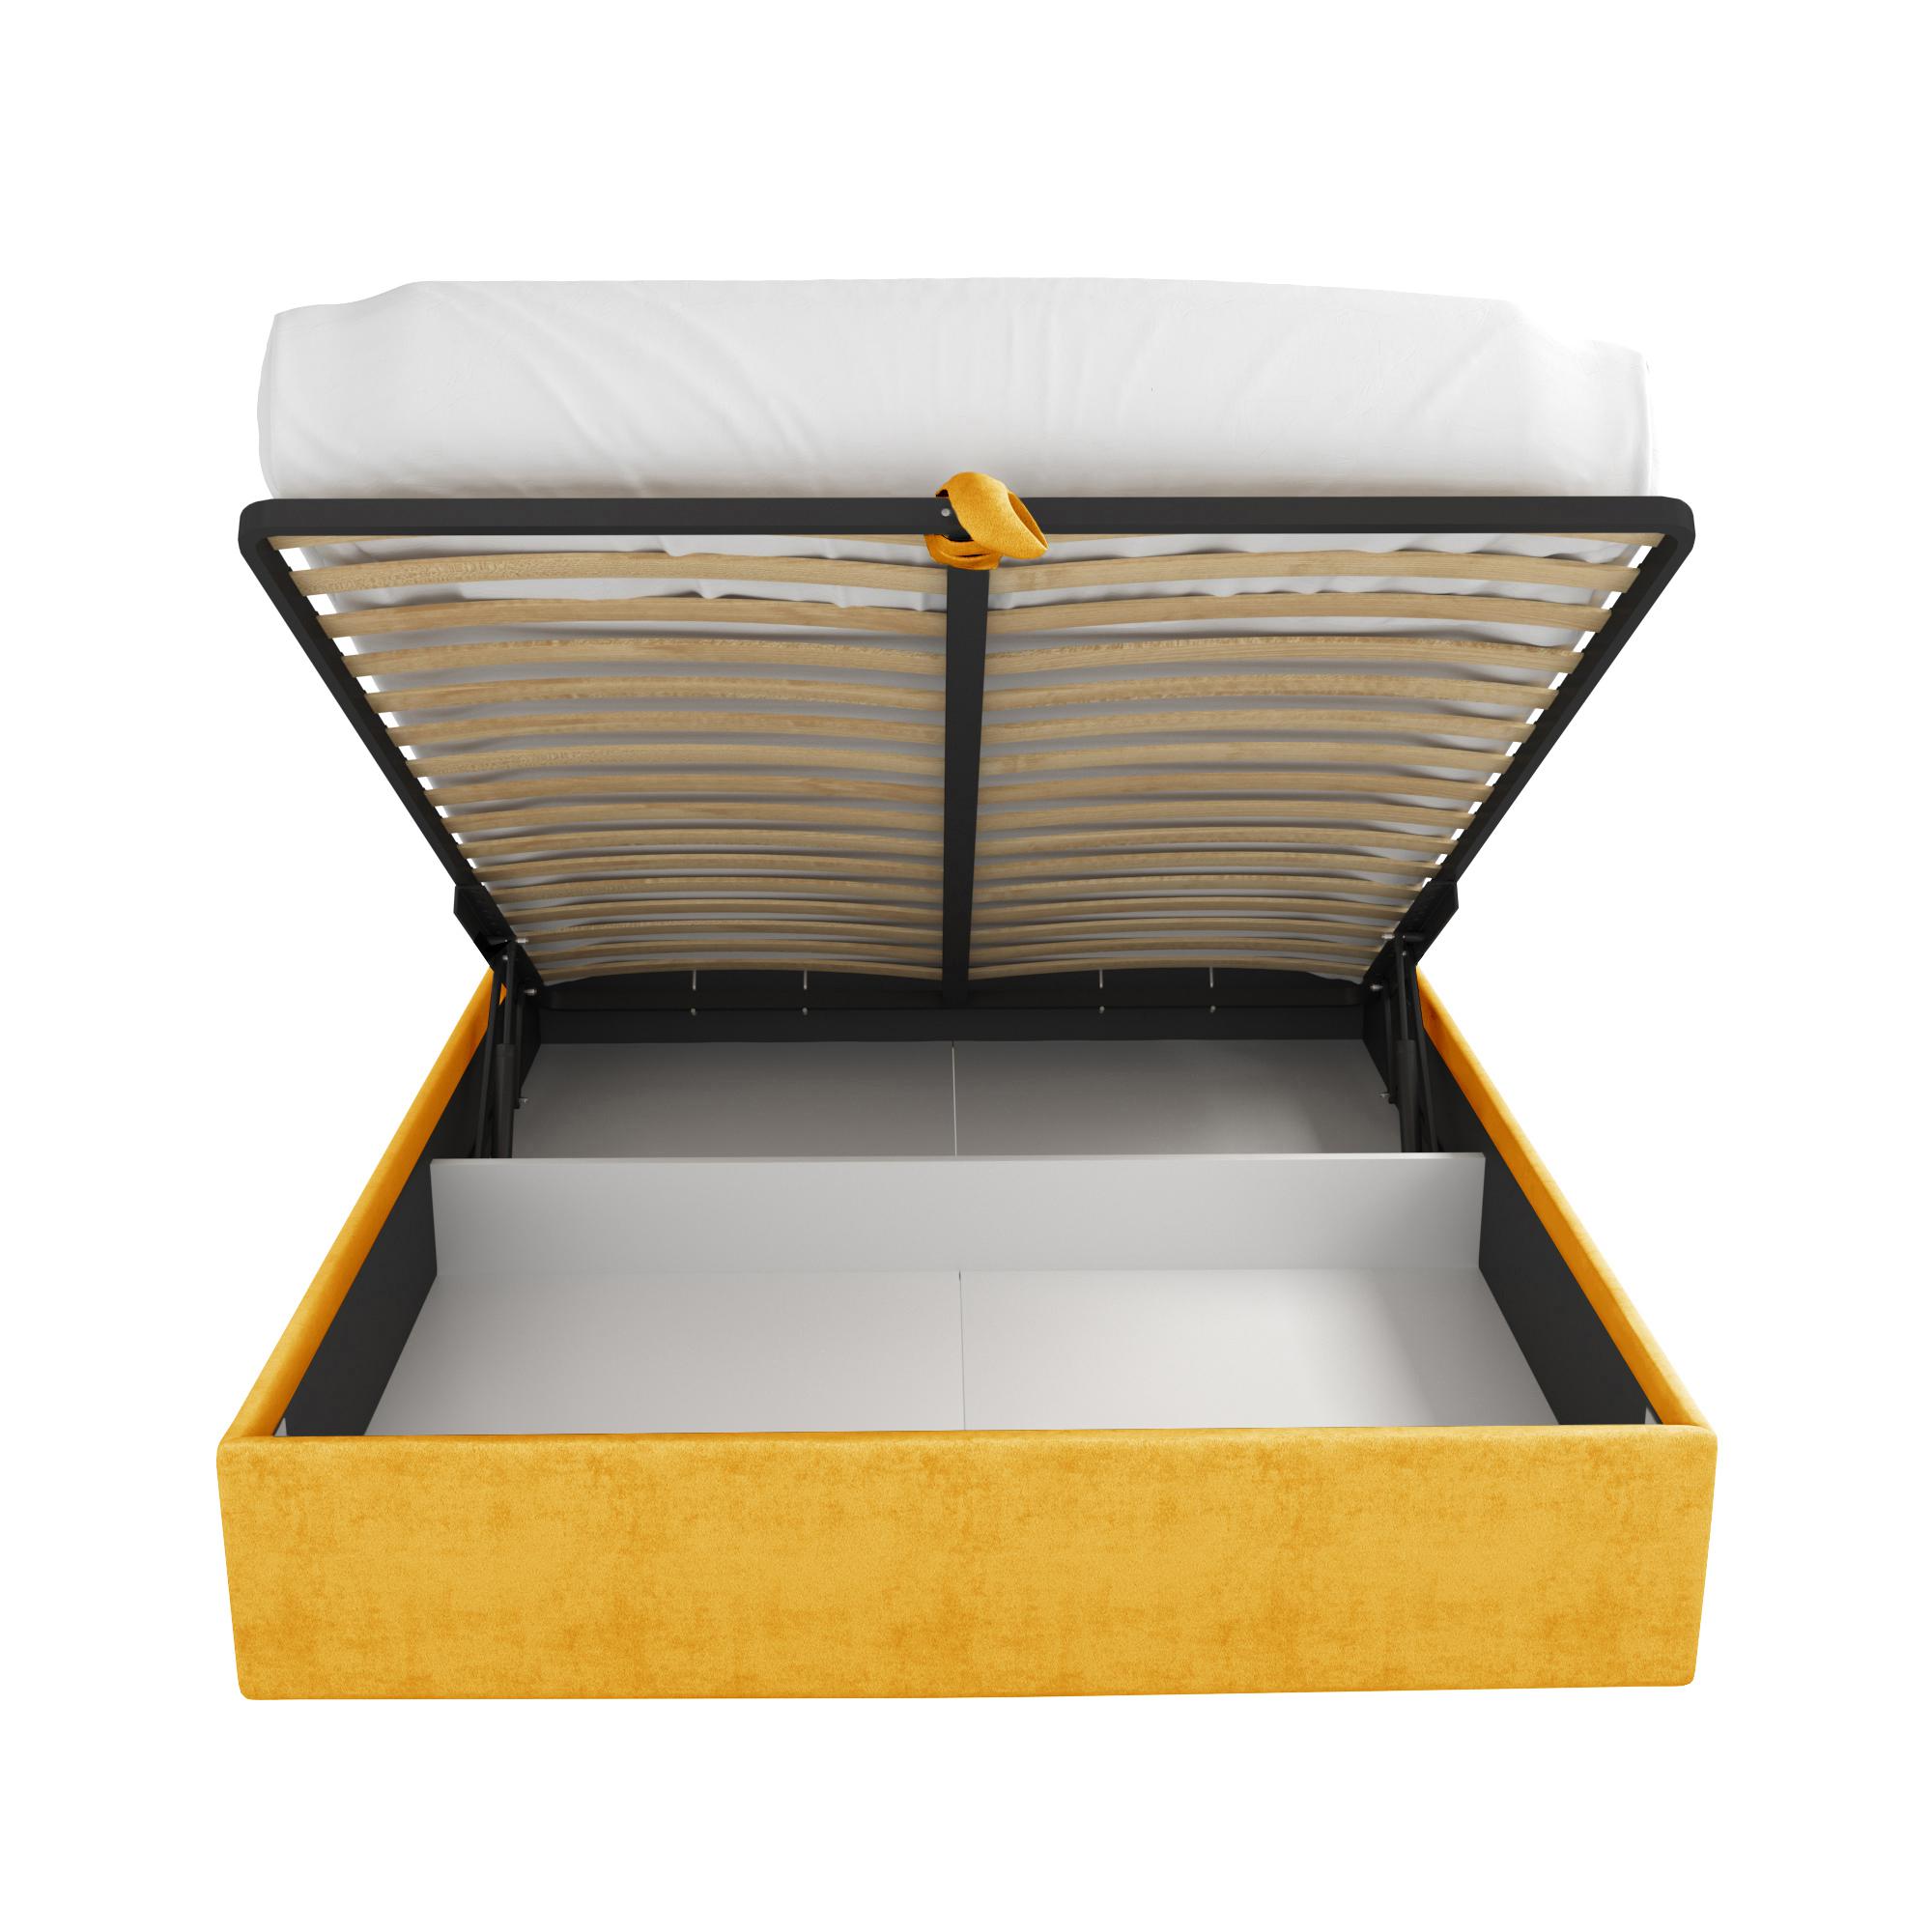 Кровать Салерно желтая 160х200 изображение товара